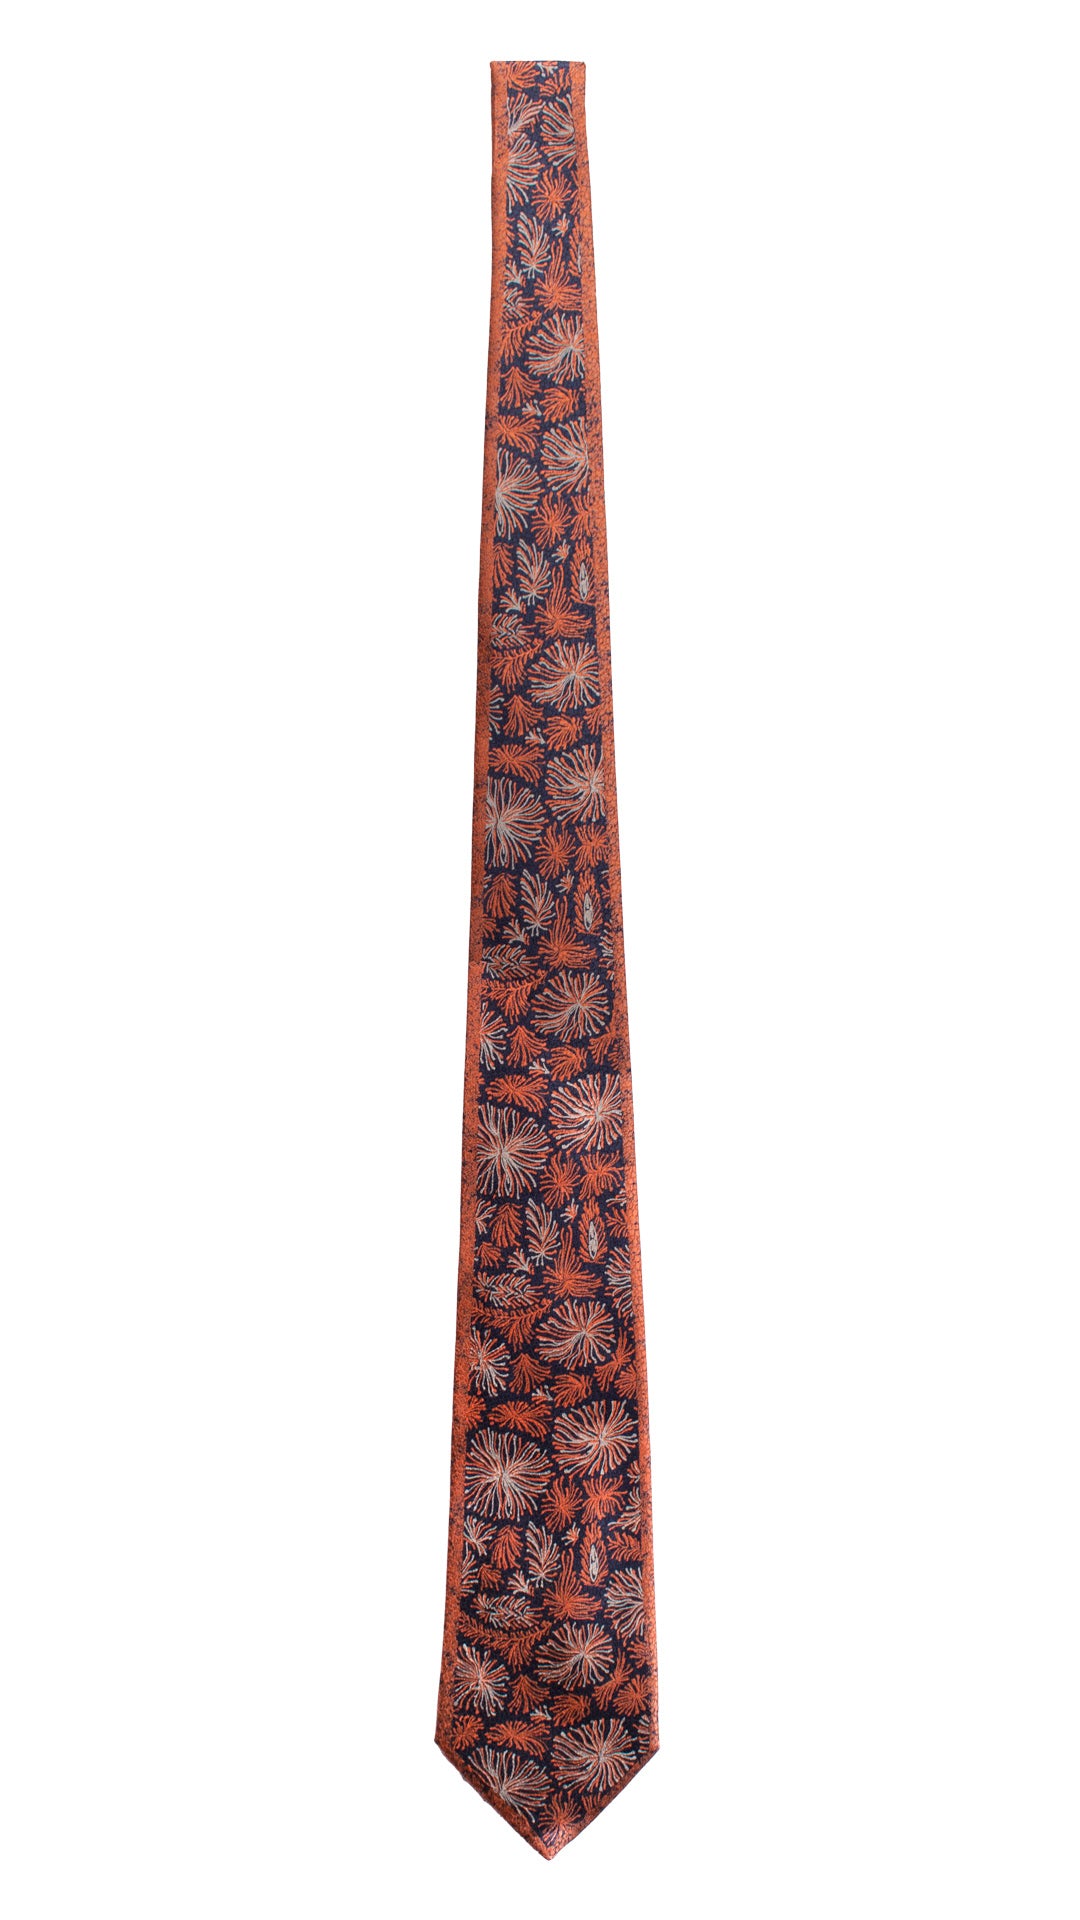 Cravatta Vintage di Seta Jacquard Color Mattone Fantasia Blu Grigio Argento CV820 Intera